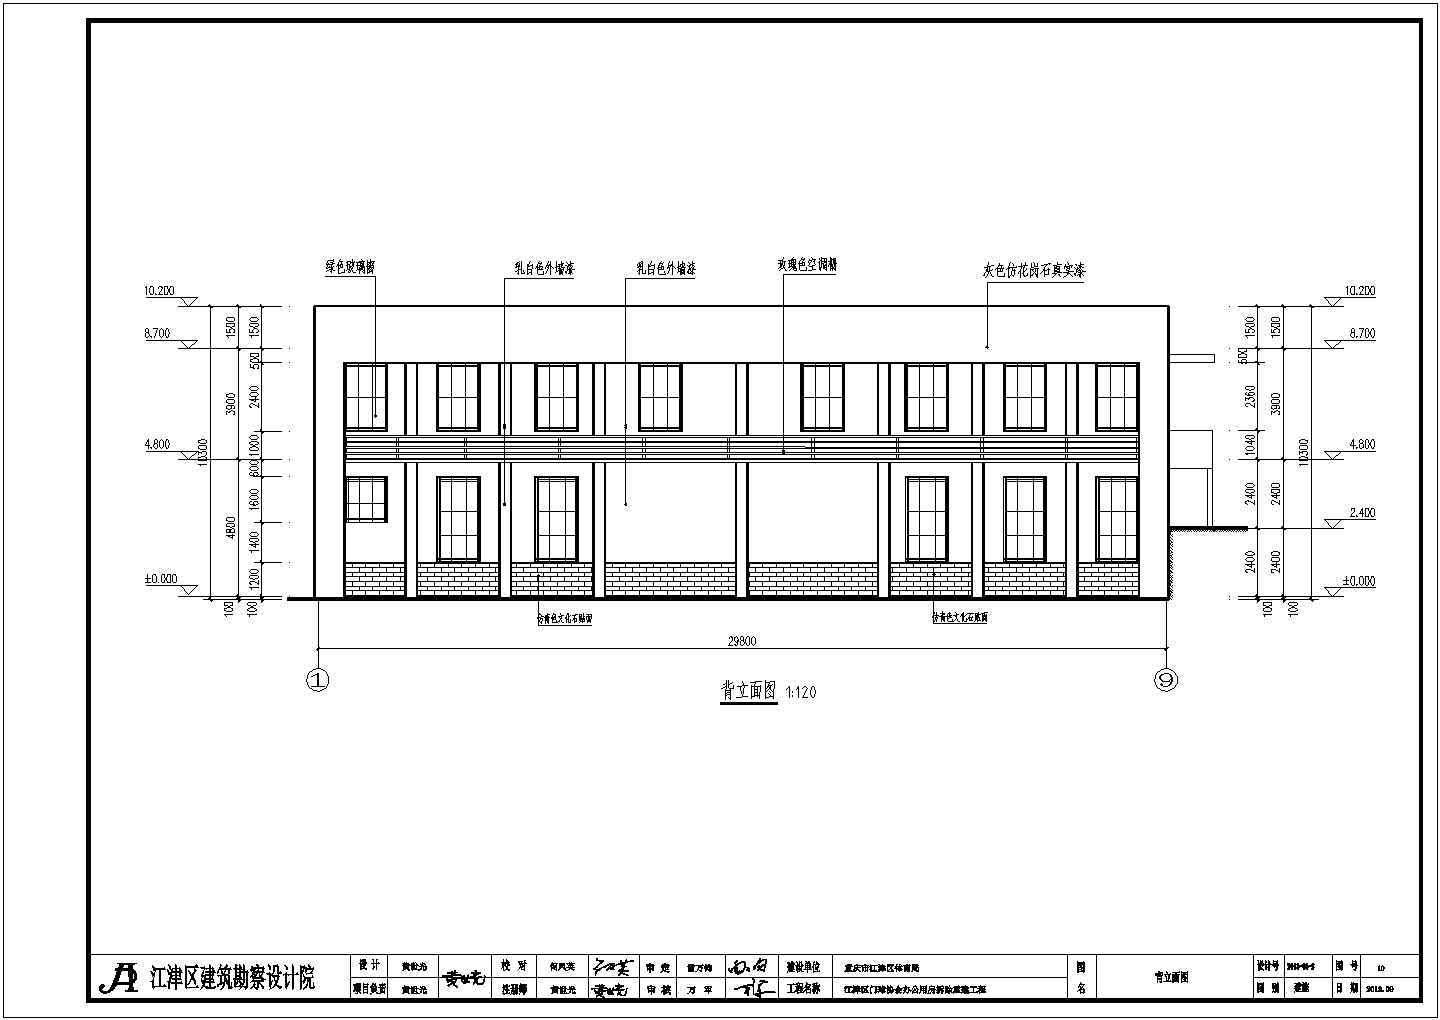 江津区门球协会二层办公用房拆除重建工程建筑设计施工图